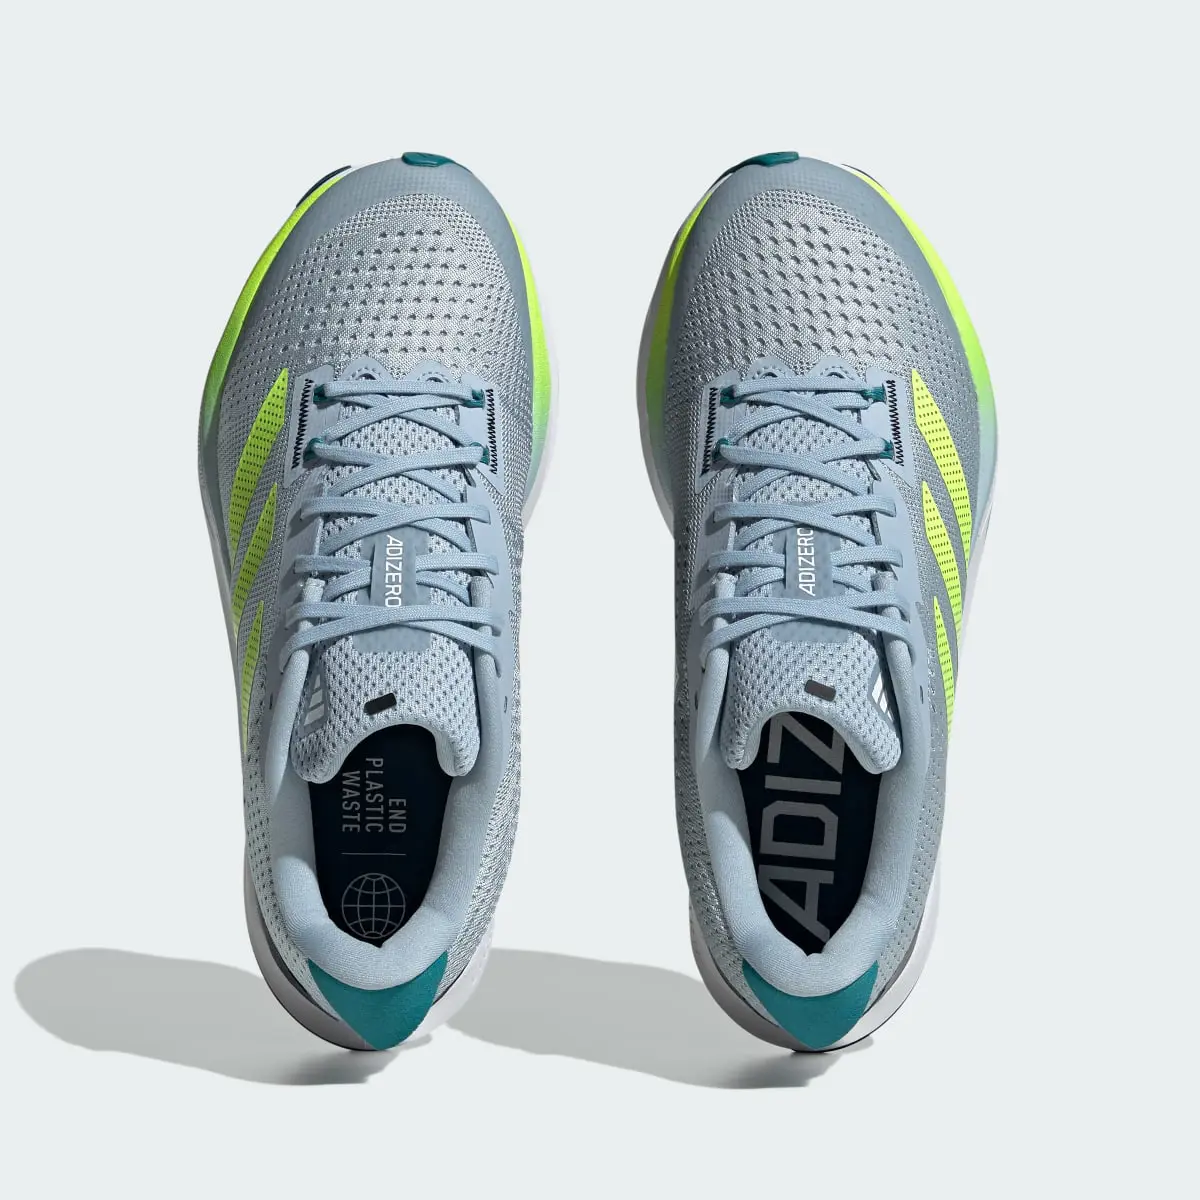 Adidas Adizero SL Running Shoes. 3